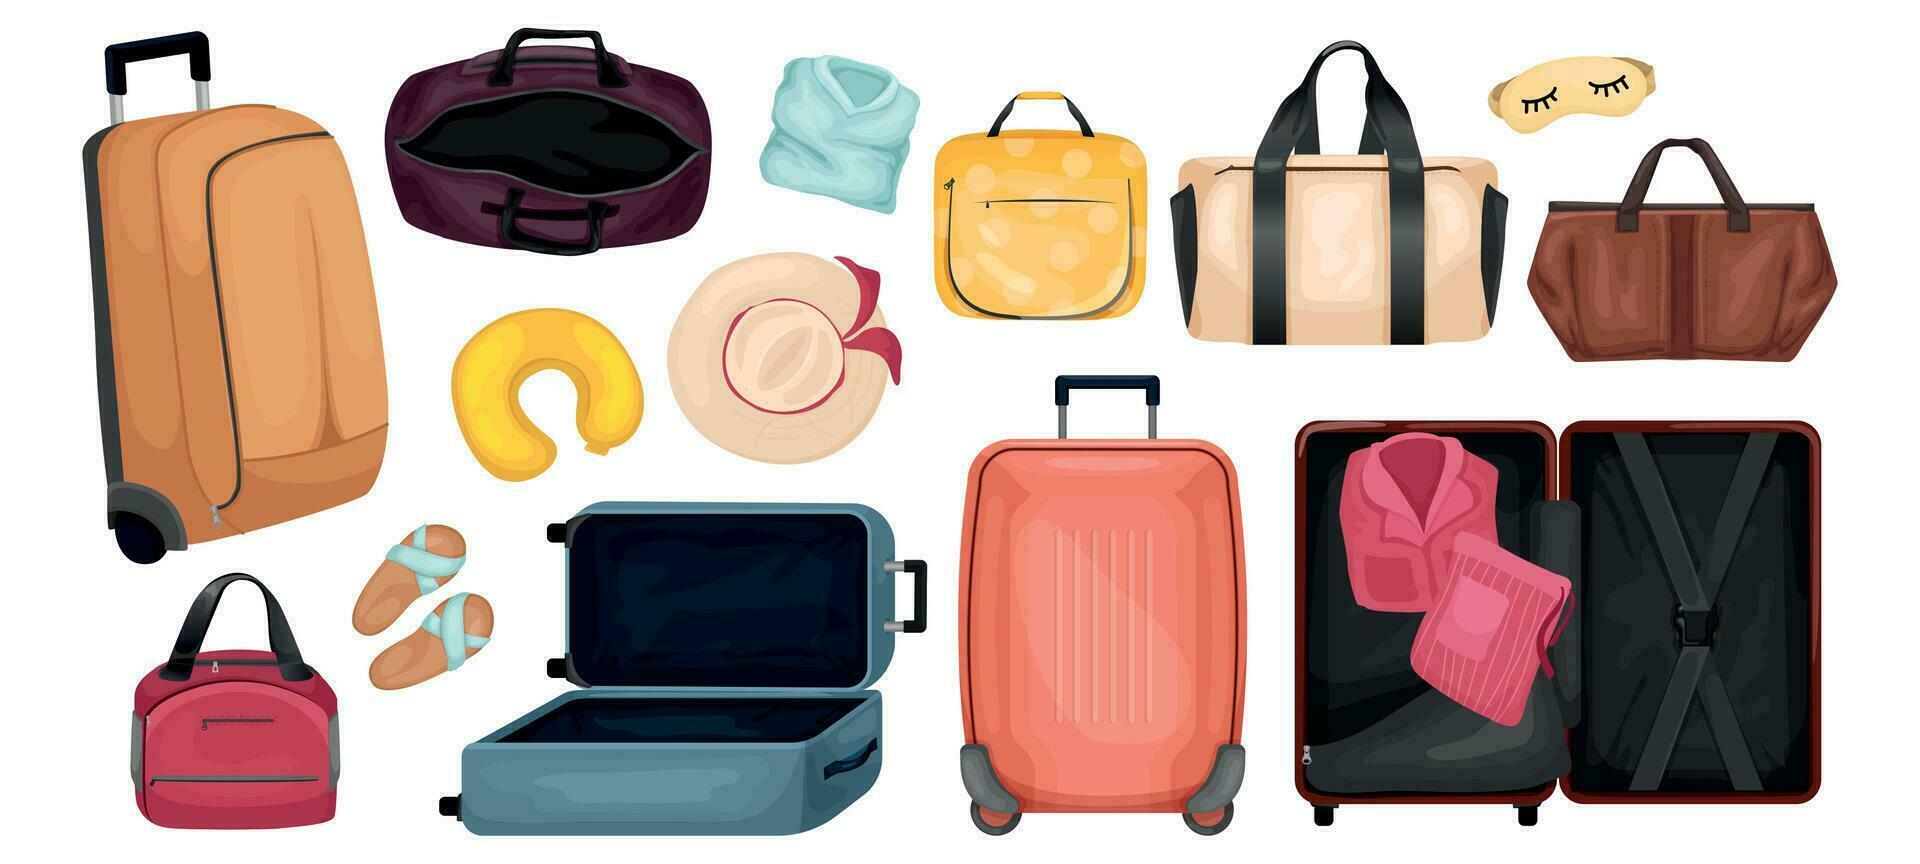 reizen bagage realistisch reeks vector